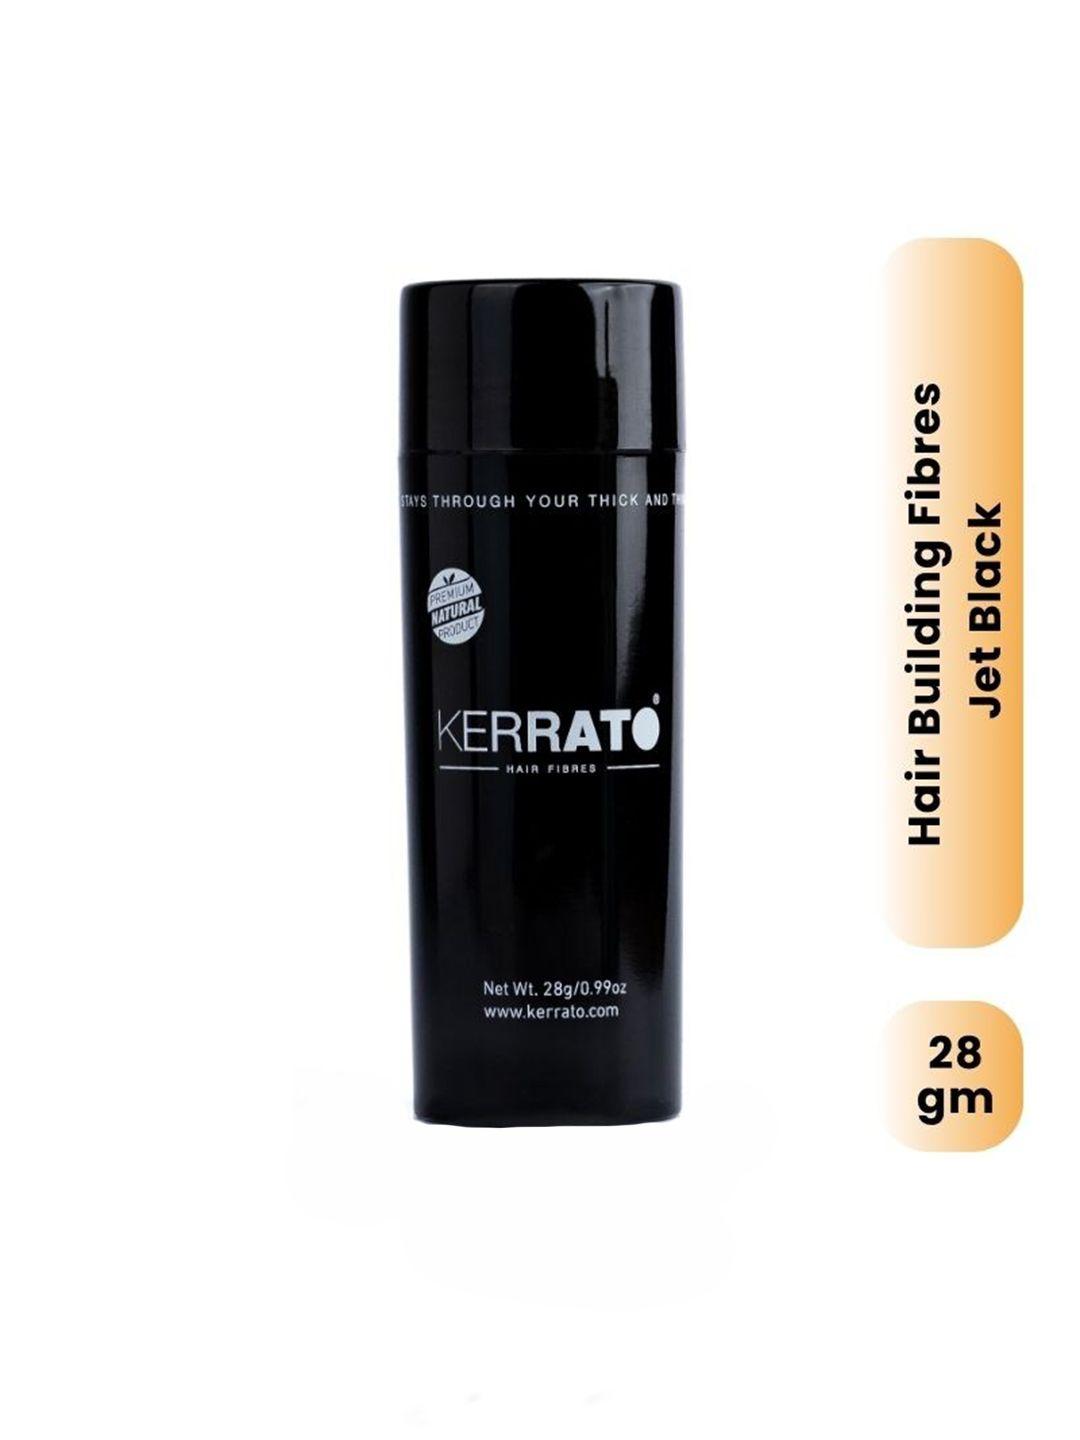 kerrato hair fibres for thinning hair - 28g - jet black